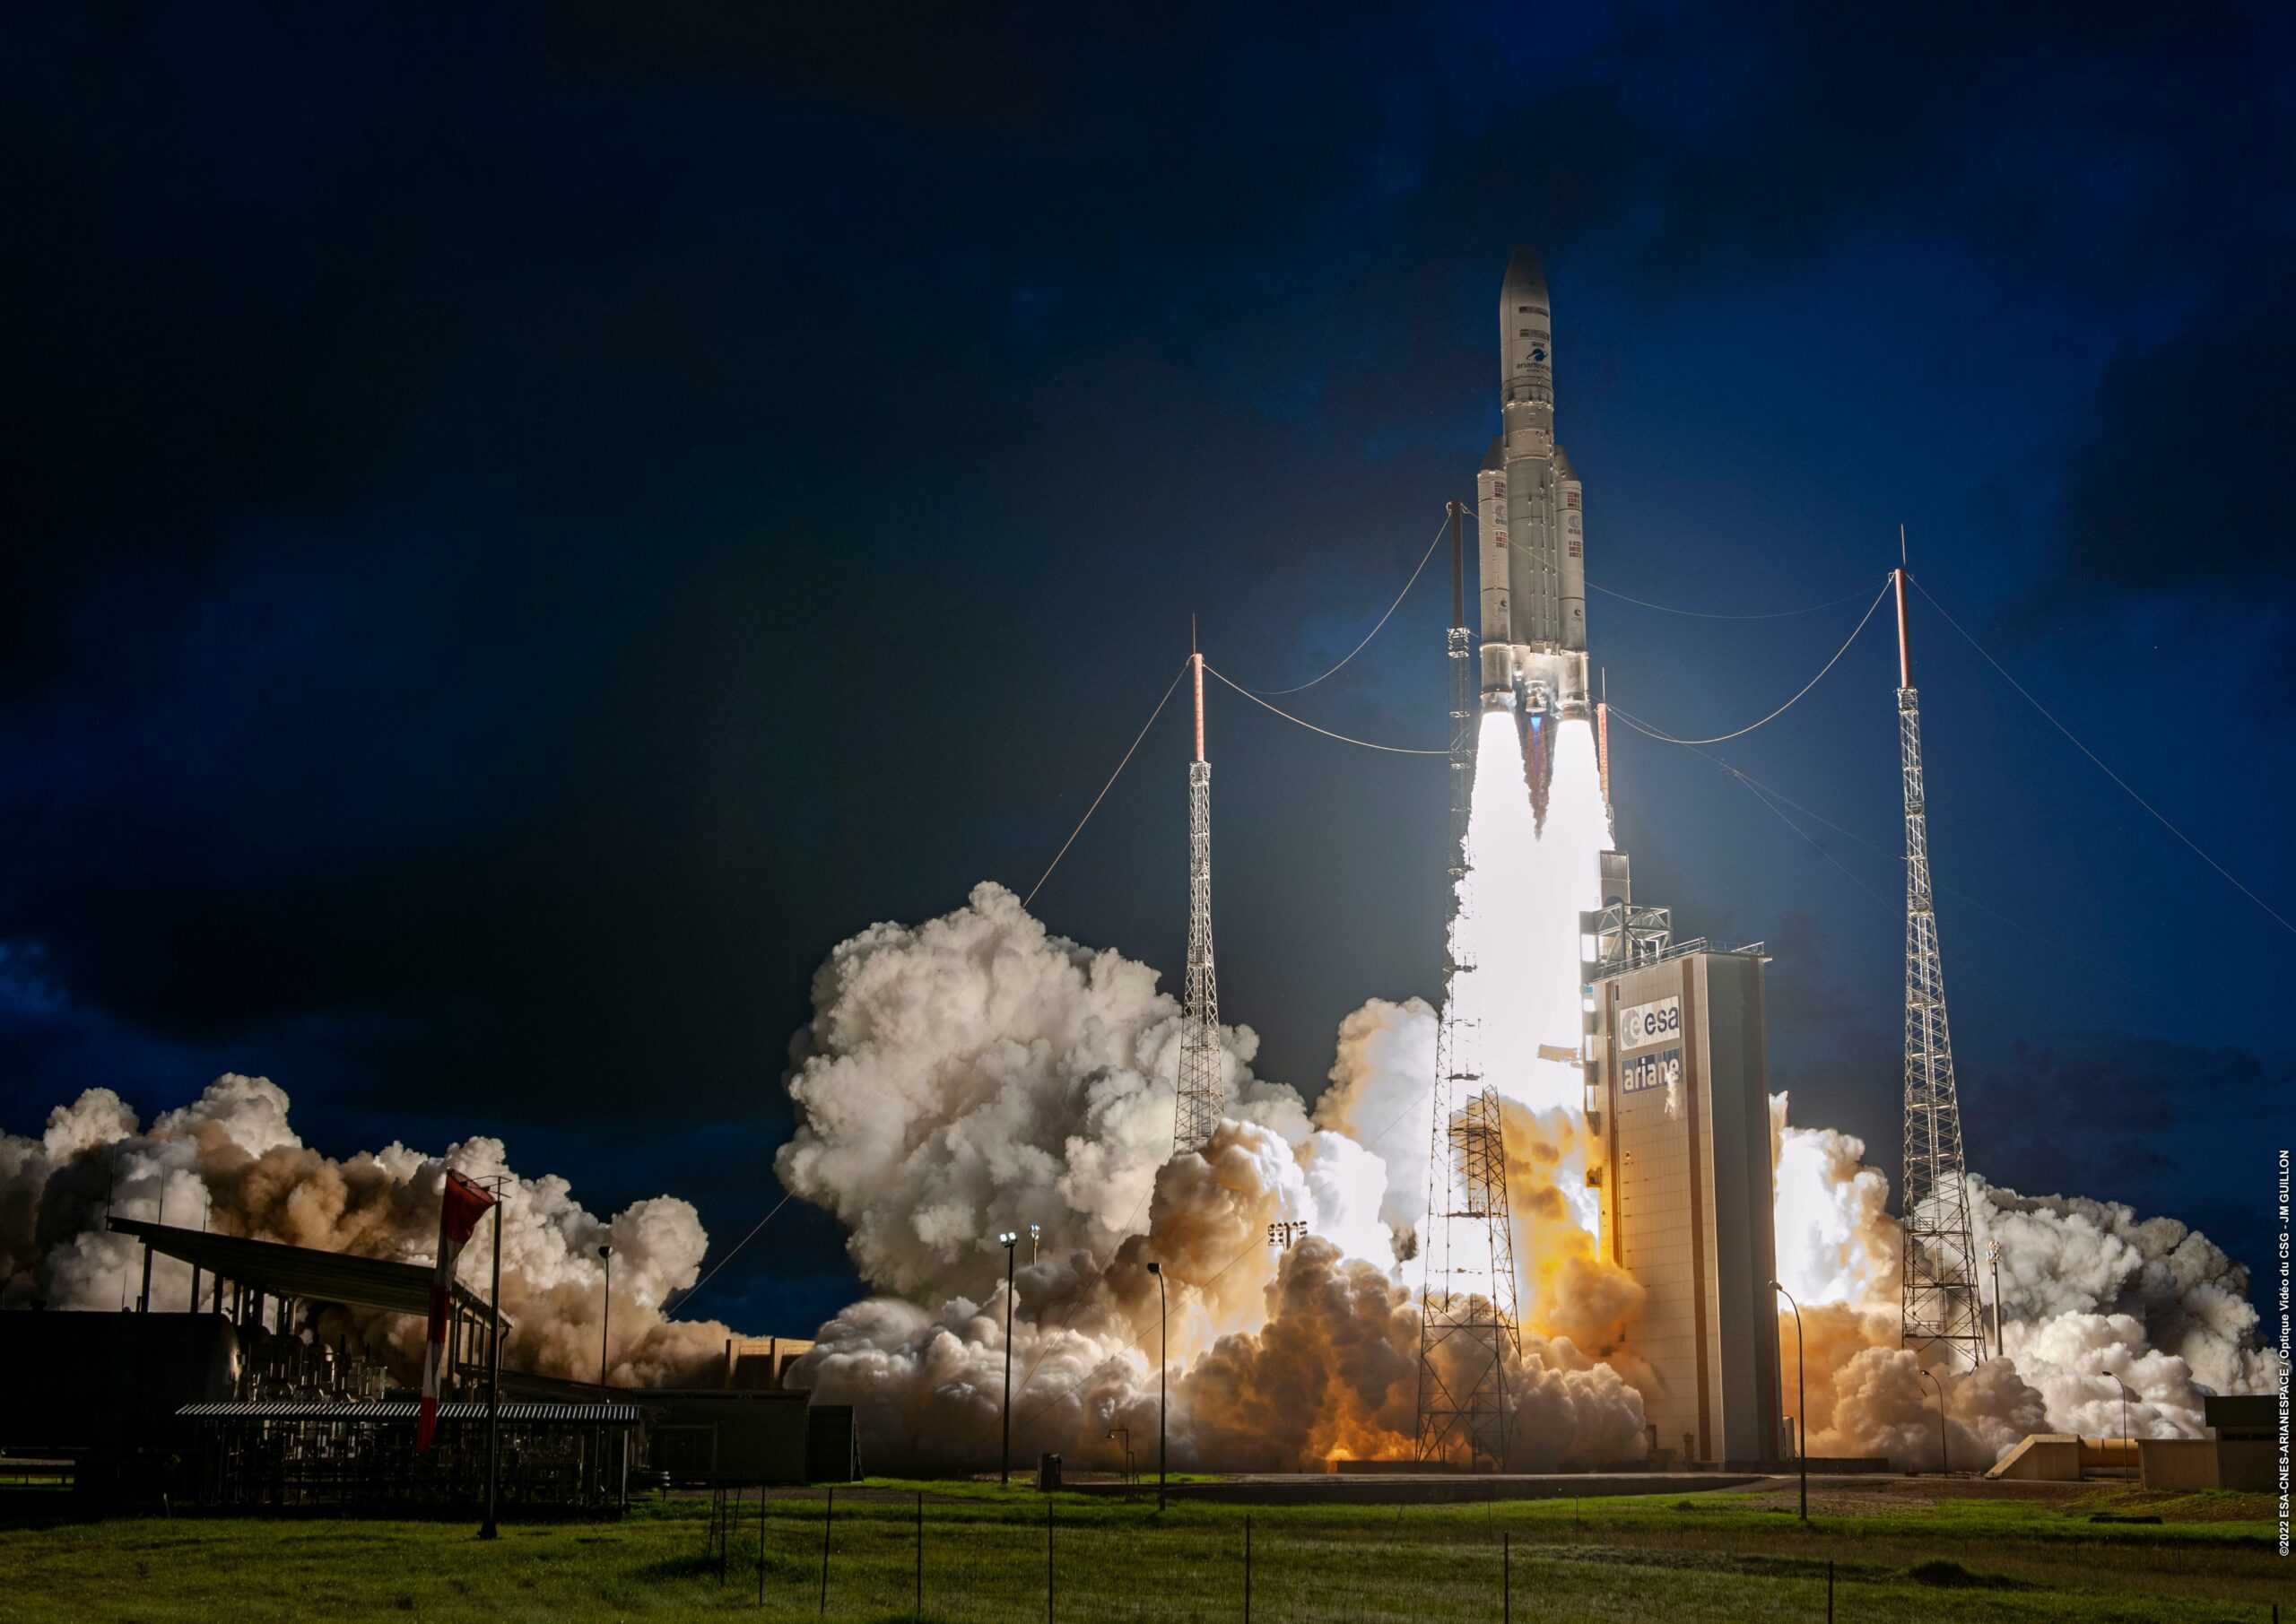 Niemcy inwestują w rozwój francuskiej rakiety Ariane 7, która ma konkurować ze SpaceX